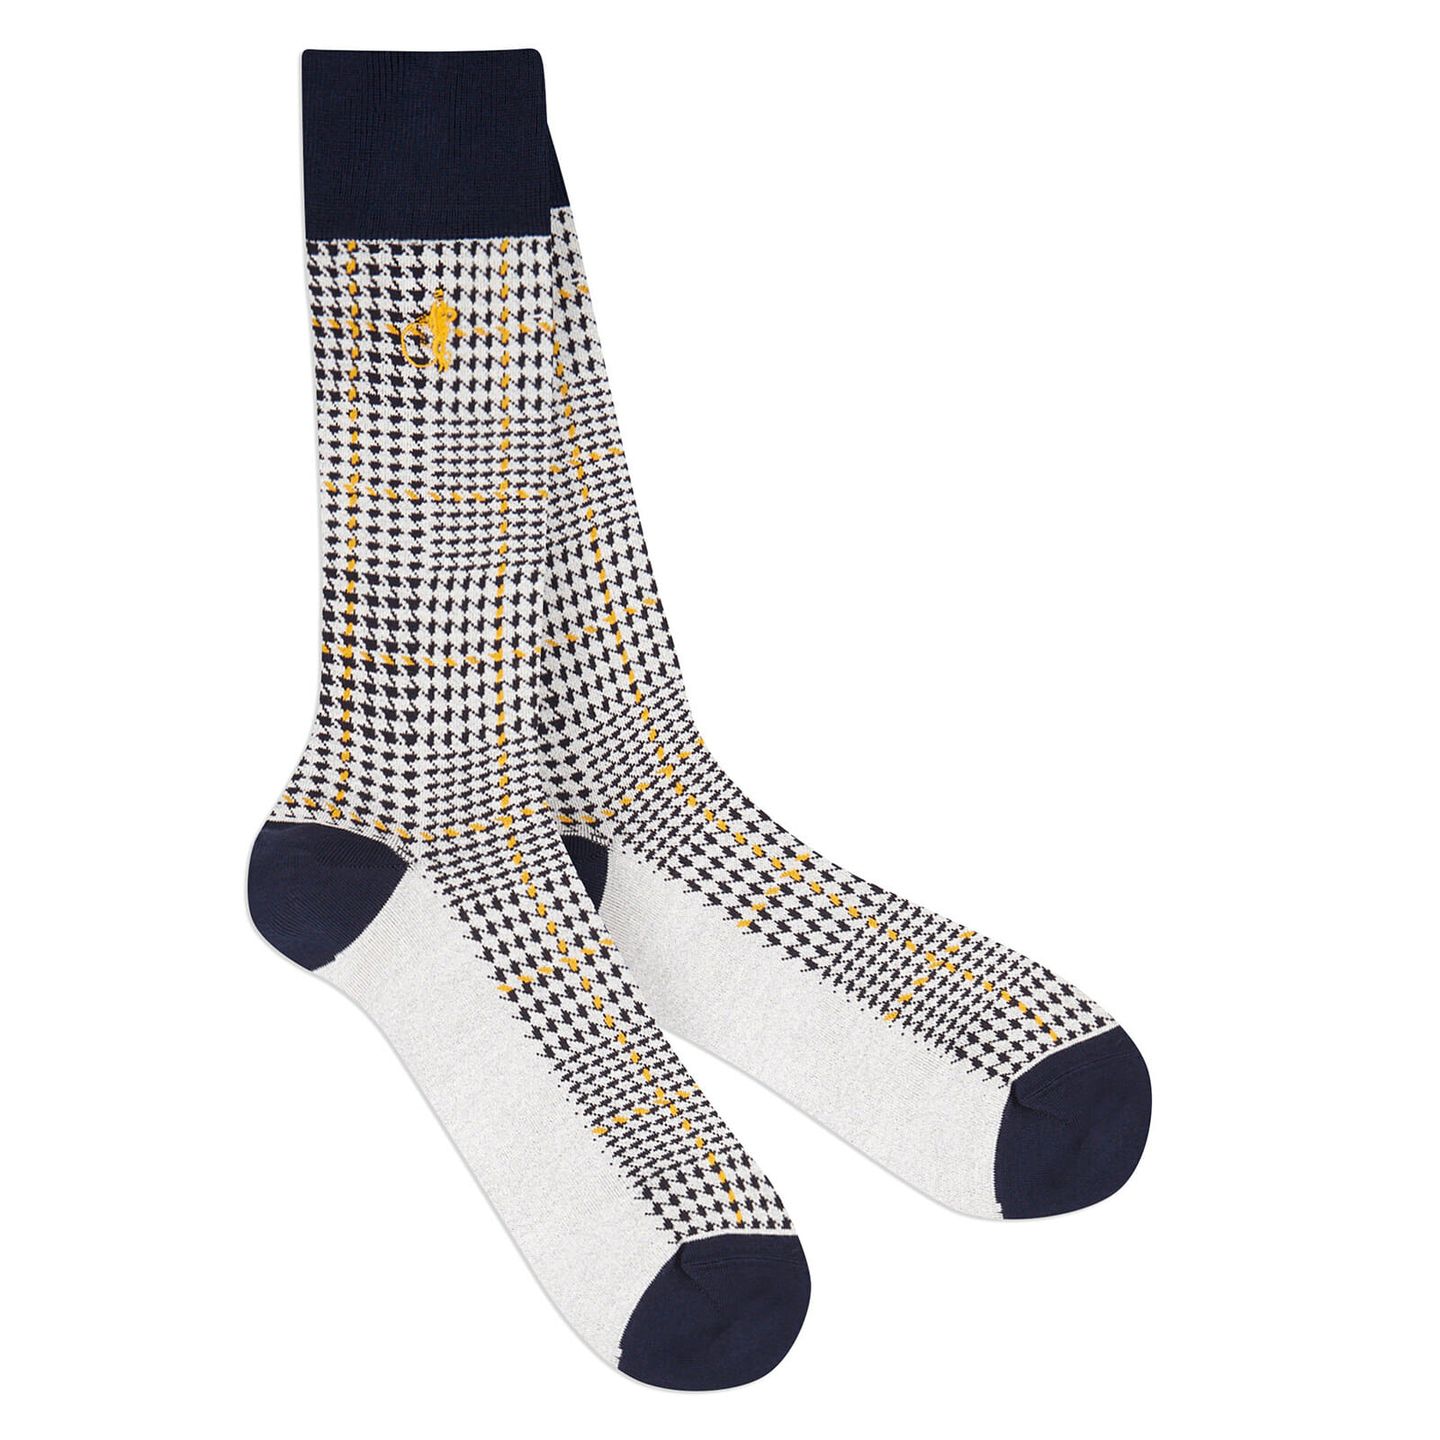 Ottaway Style Grey, from London Sock Co. Luxury Mens Socks